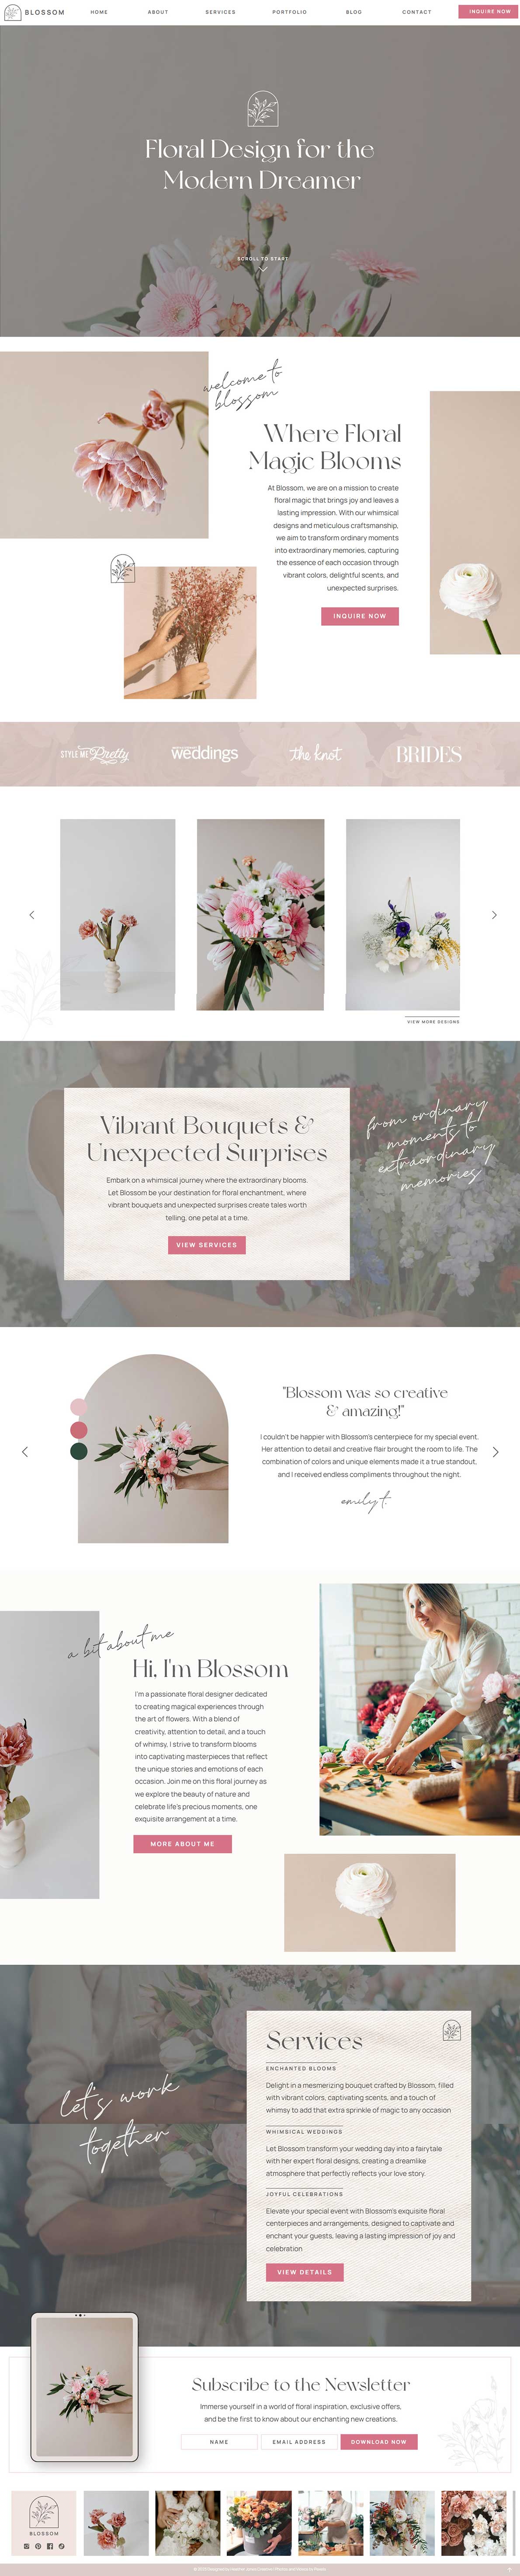 Blossom Showit Website Template for Floral Designers